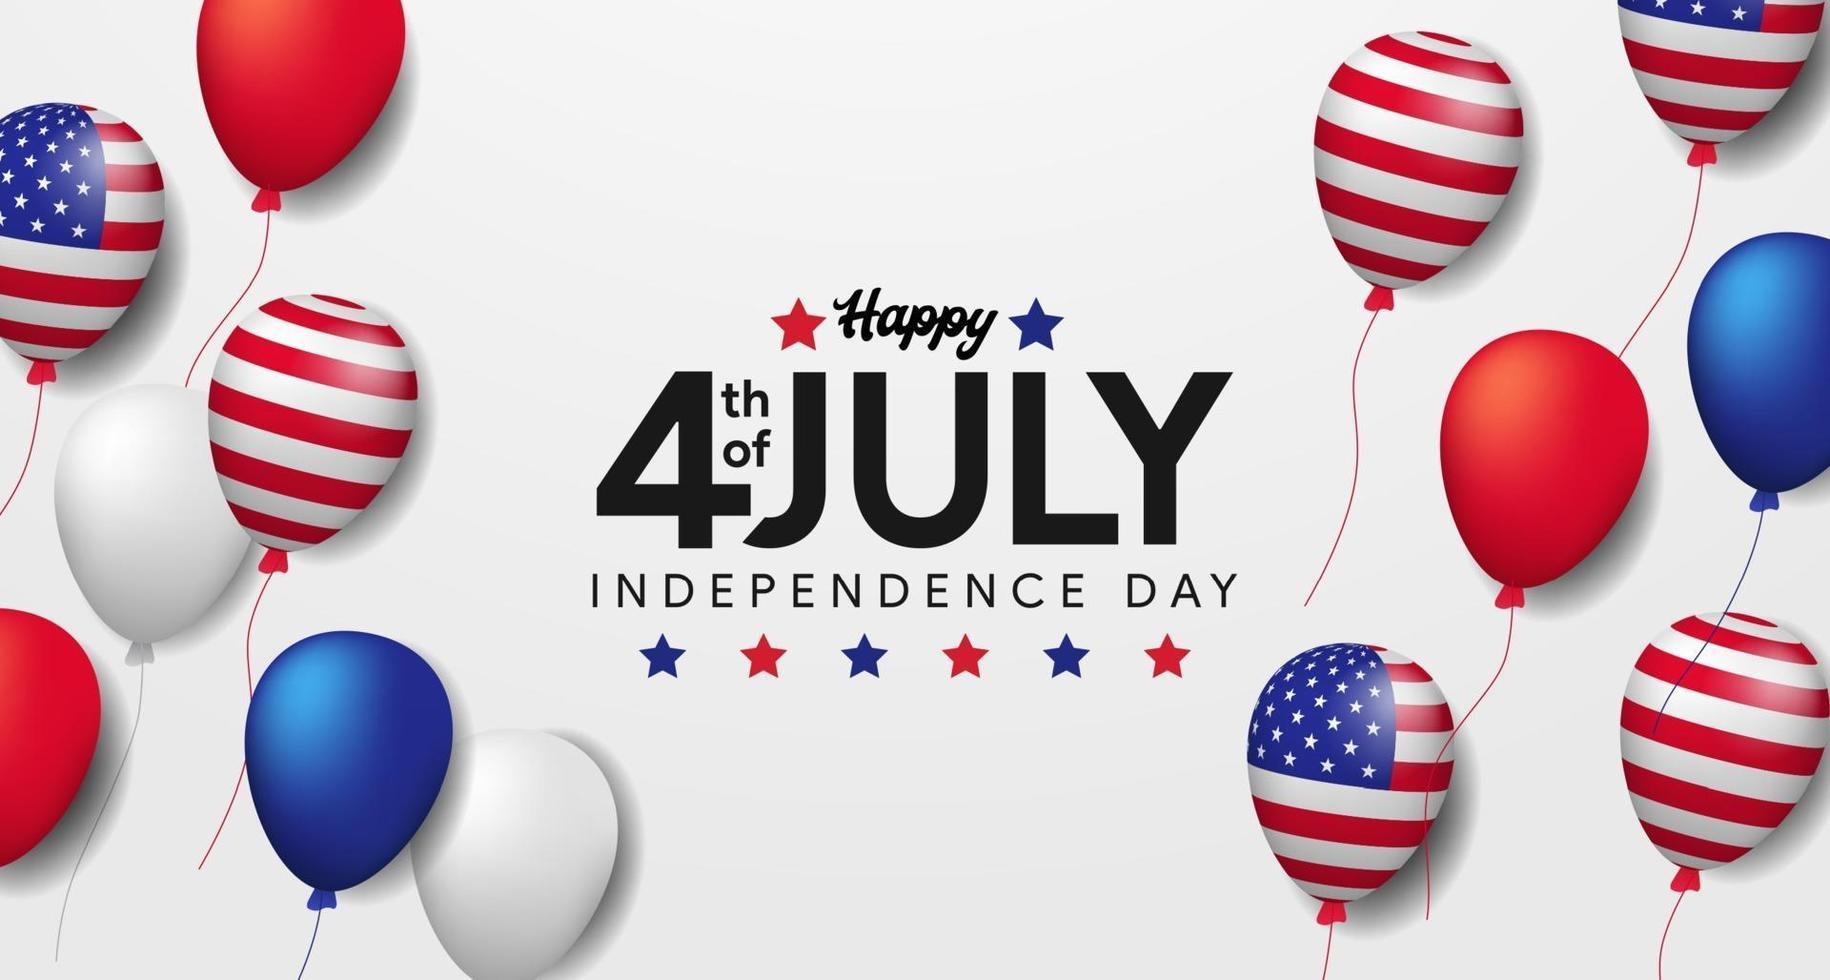 quarto de julho, dia da independência americana, 4 de julho dos EUA com modelo de banner de pôster de festa em balão 3d vetor